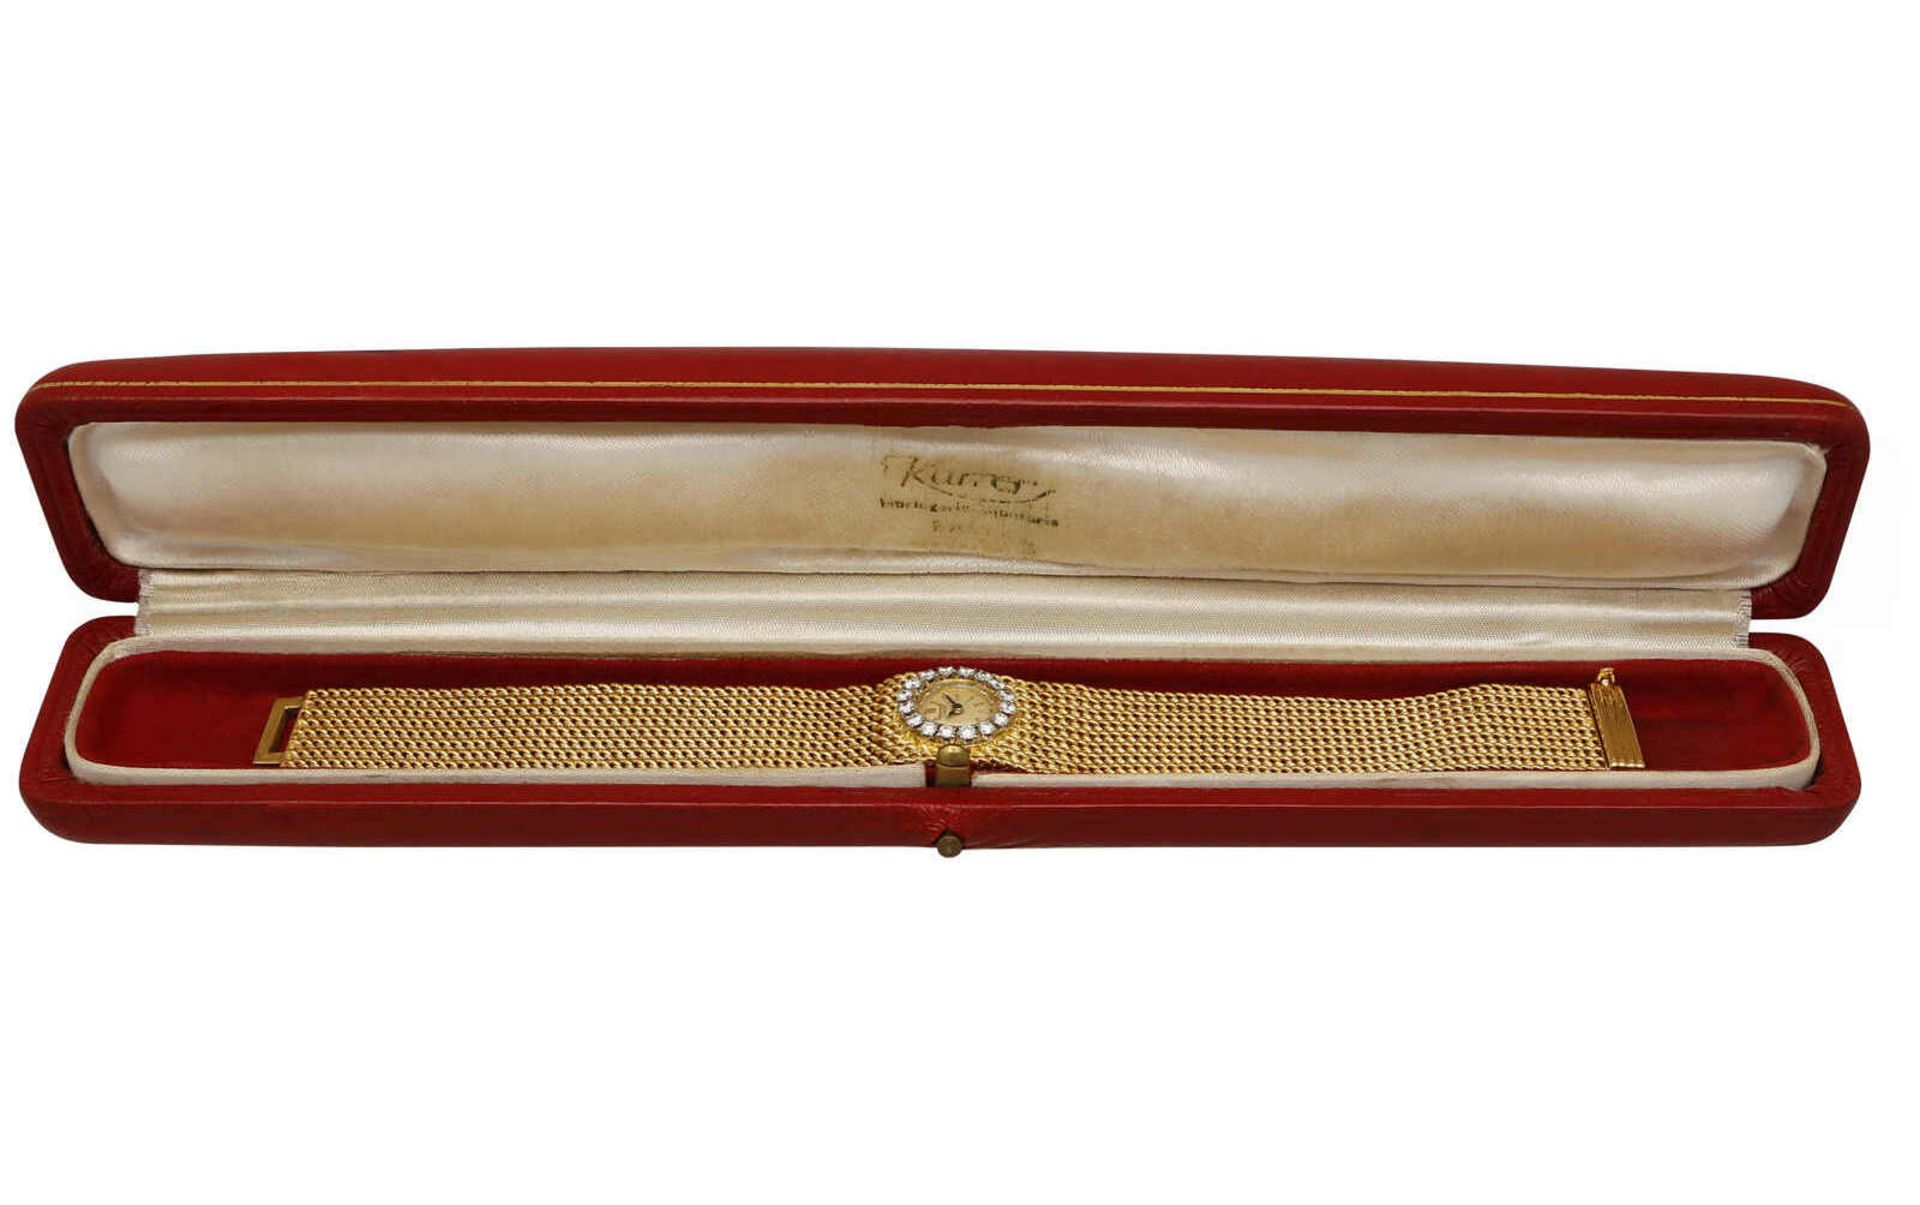 TISSOT Damenarmbanduhr Dekorative Schmuckuhr in Gelbgold 18K mit Brillanten besetzter Lünette. - Image 2 of 2